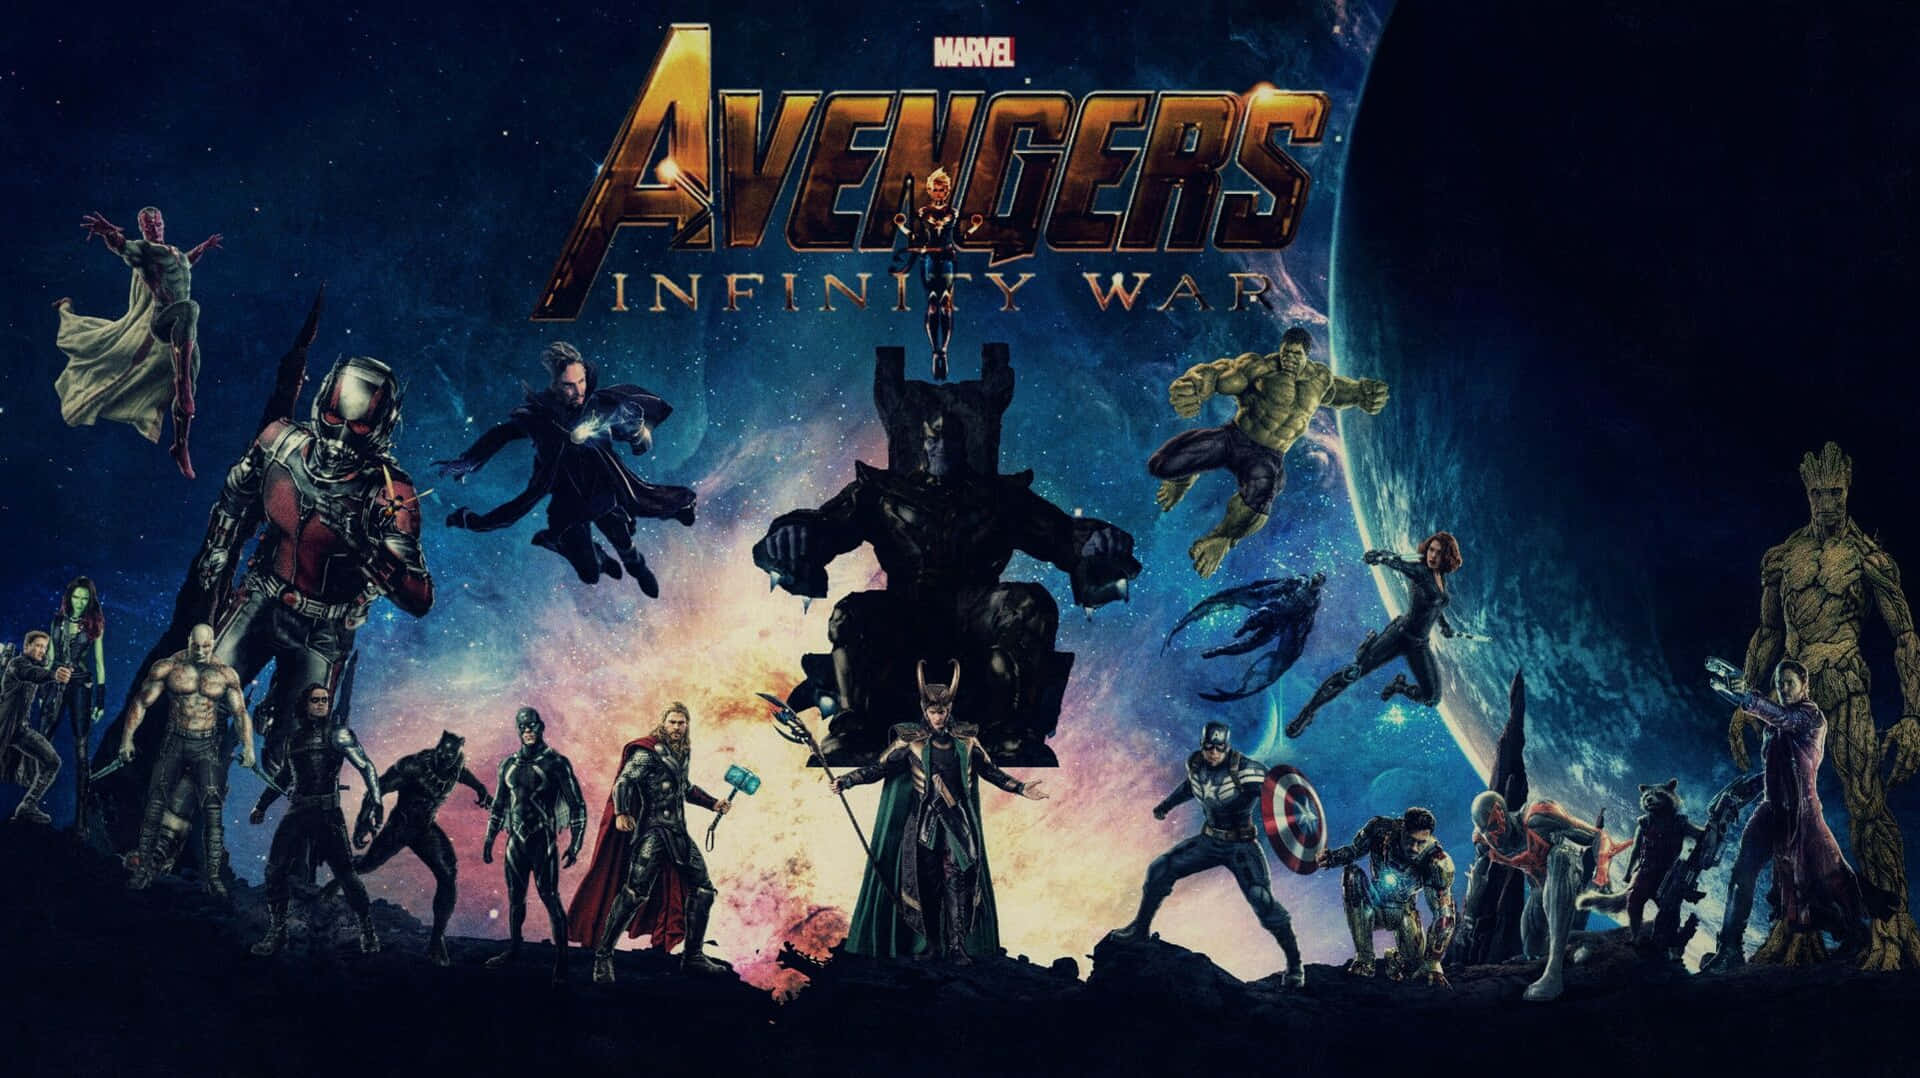 Uniscitia Marvel Alla Sede Degli Avengers.